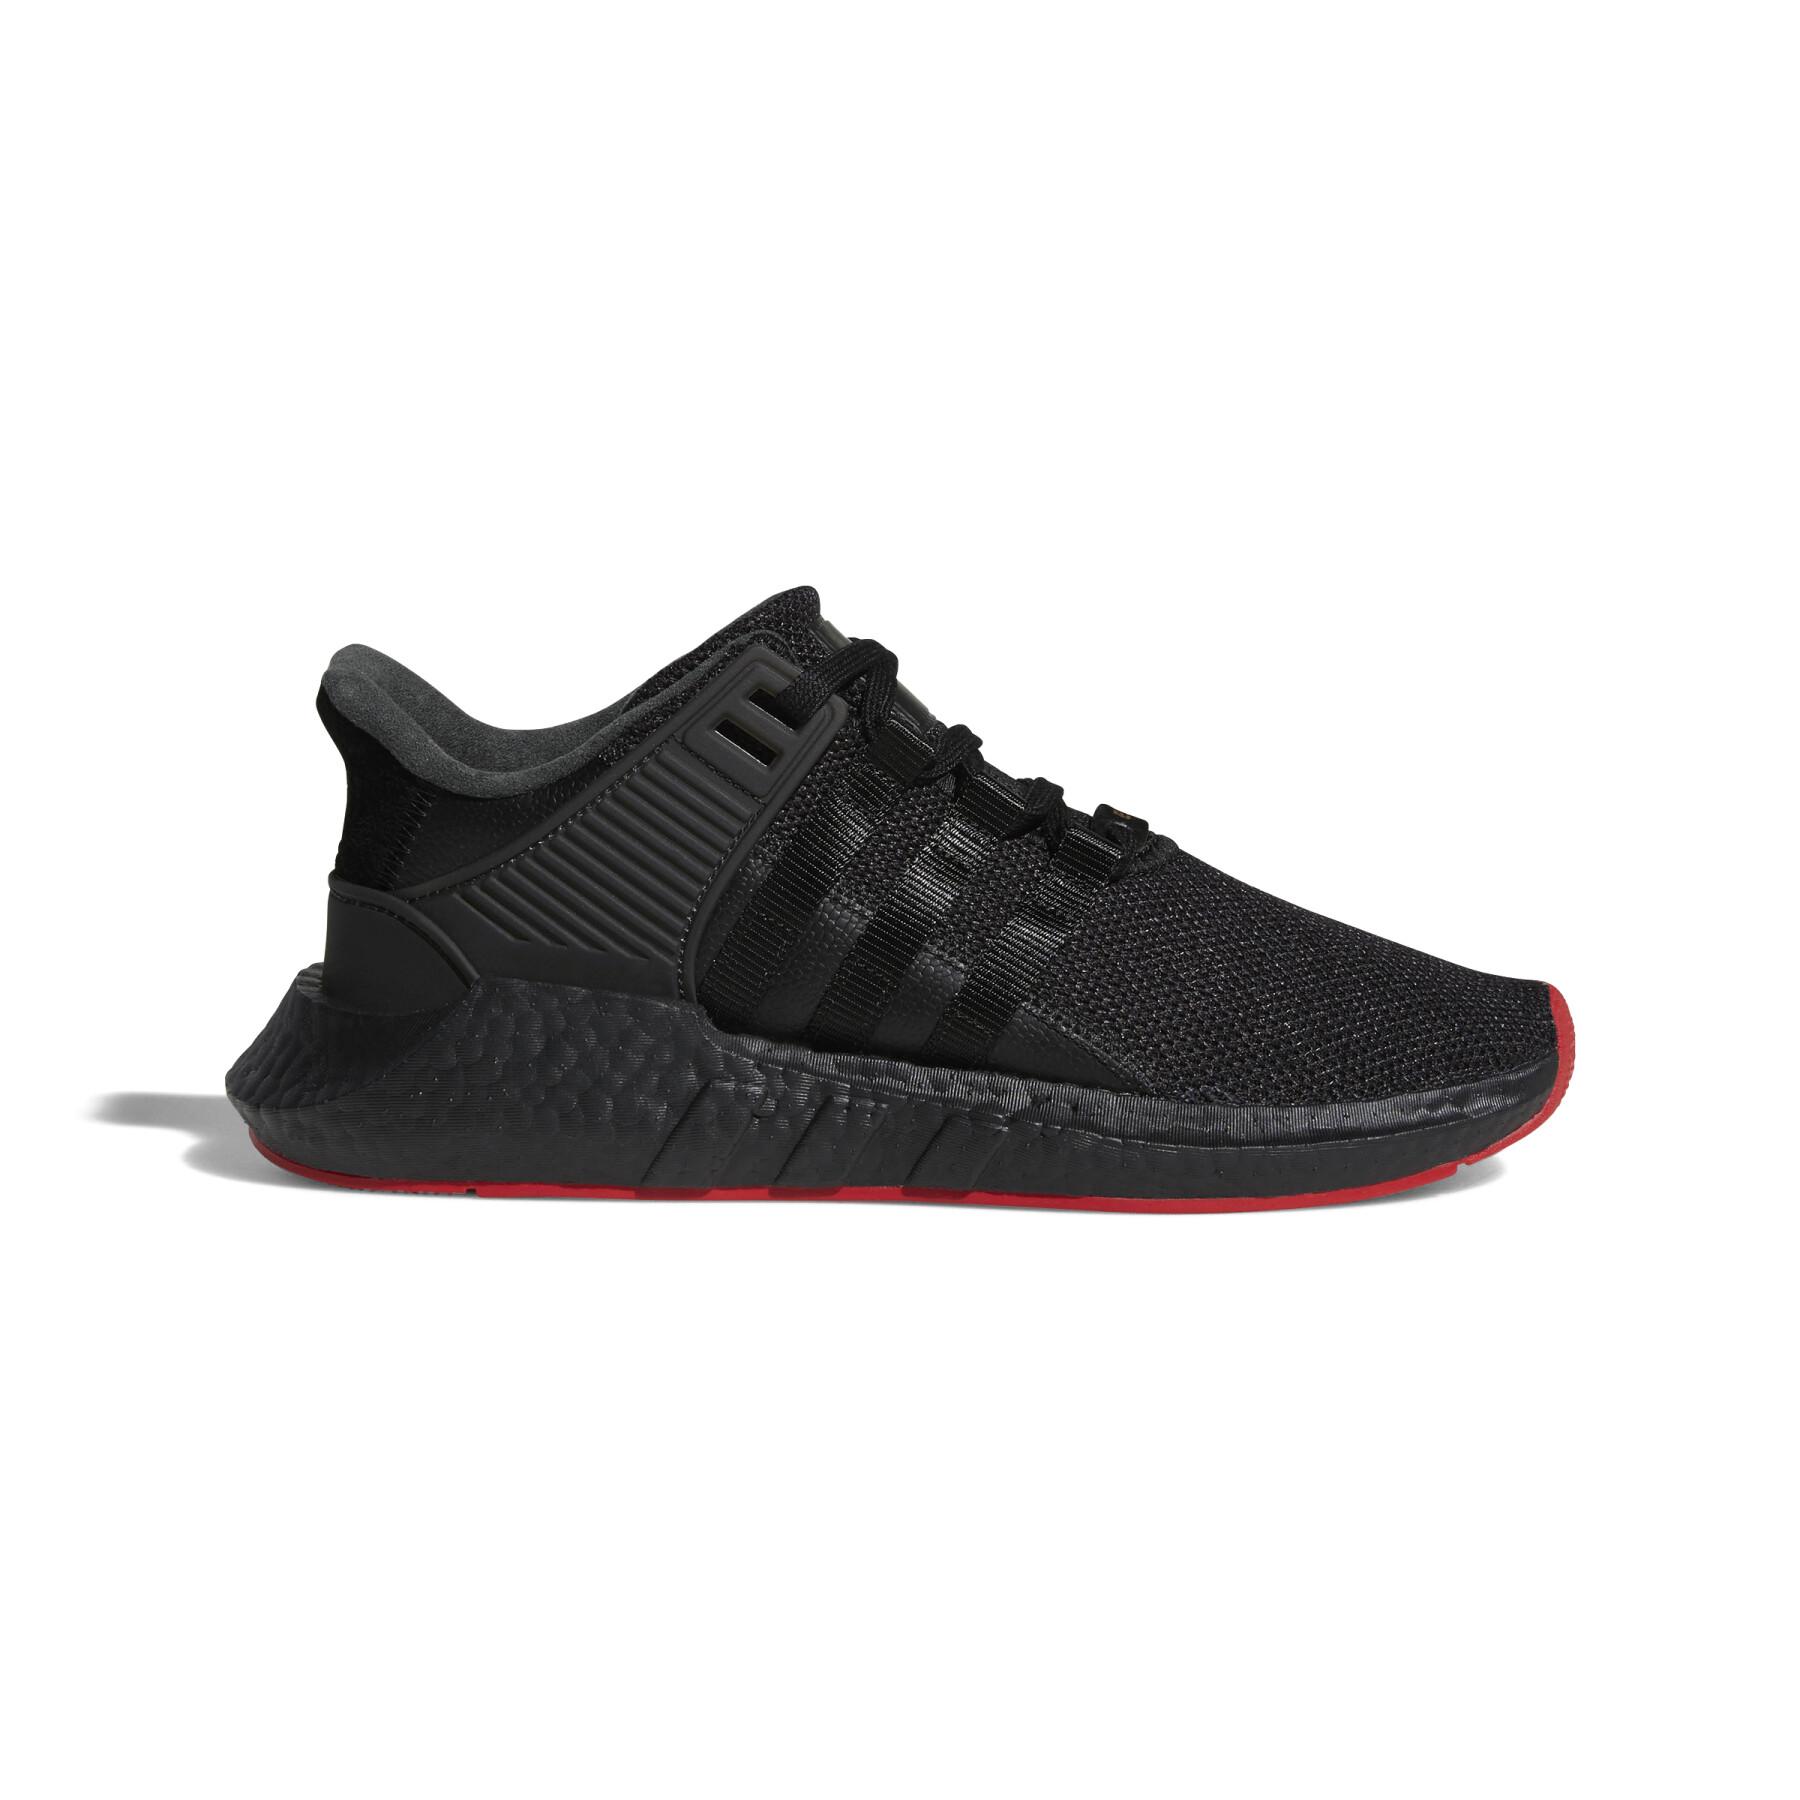 Sneakers adidas Originals Eqt Support 93/17